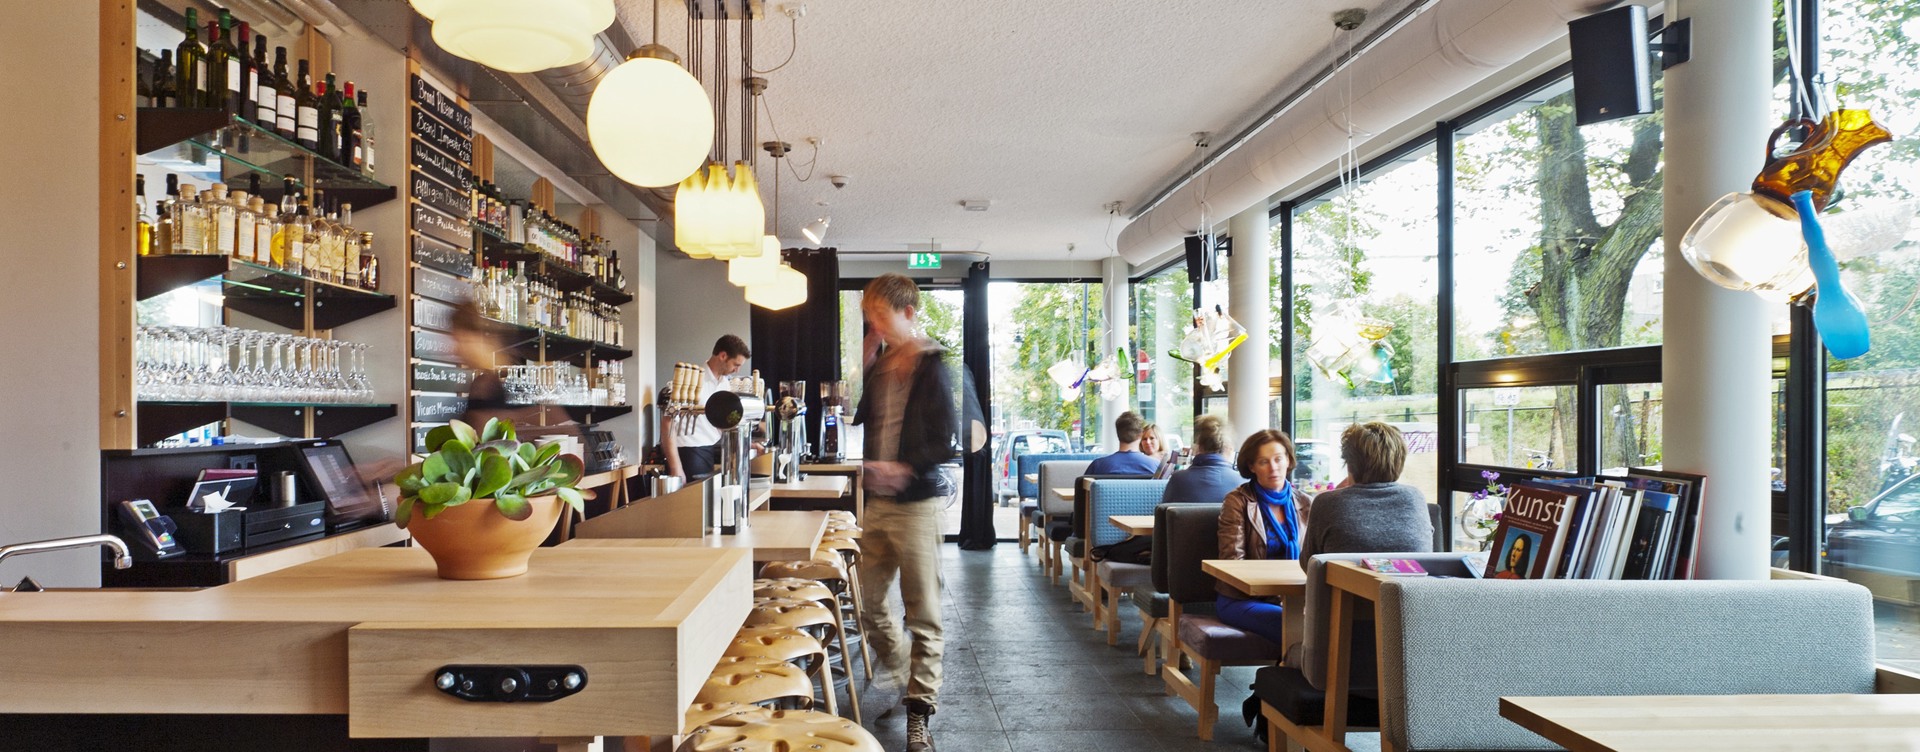 Café Caspar:
de moderne huiskamer van Arnhem